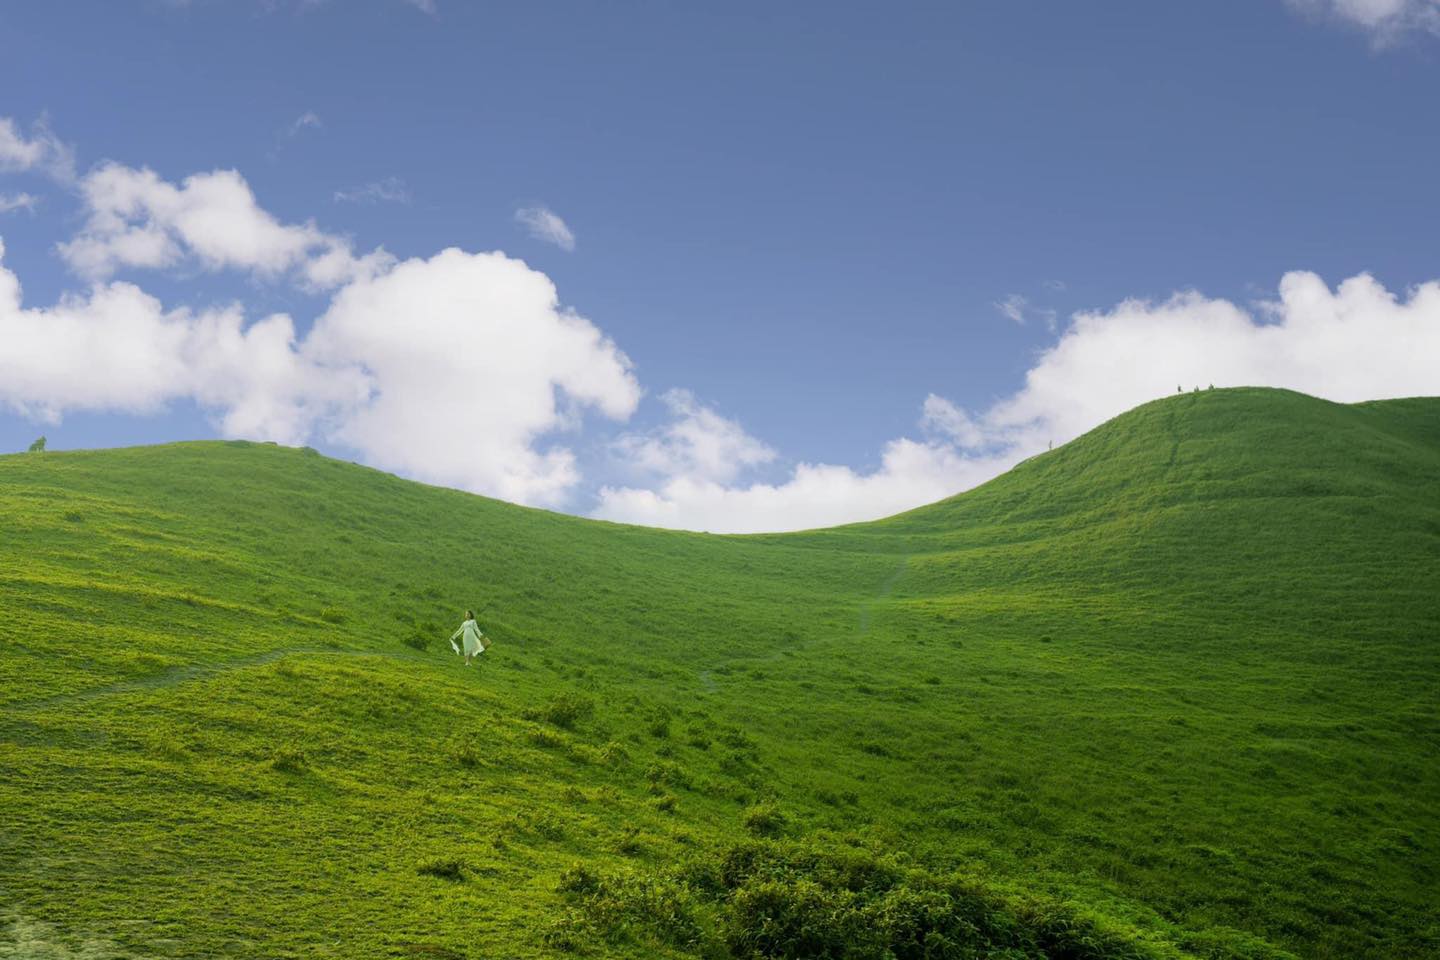 Mê mẩn đồi cỏ xanh rì, check-in siêu đẹp tại địa điểm này ở Cao Bằng- Ảnh 3.